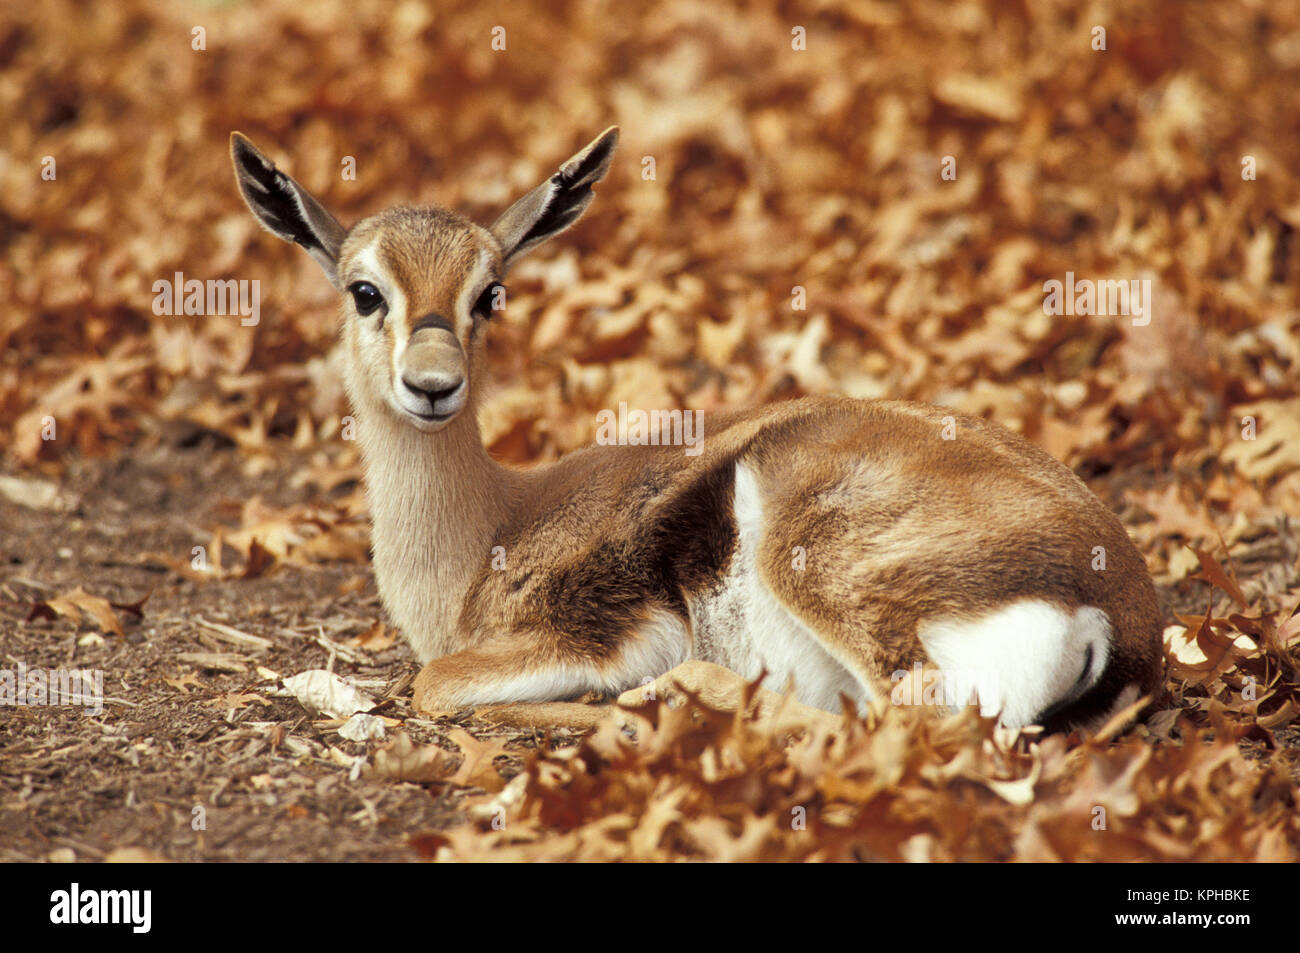 Speke's Gazelle (Gazella spekei) Stock Photo